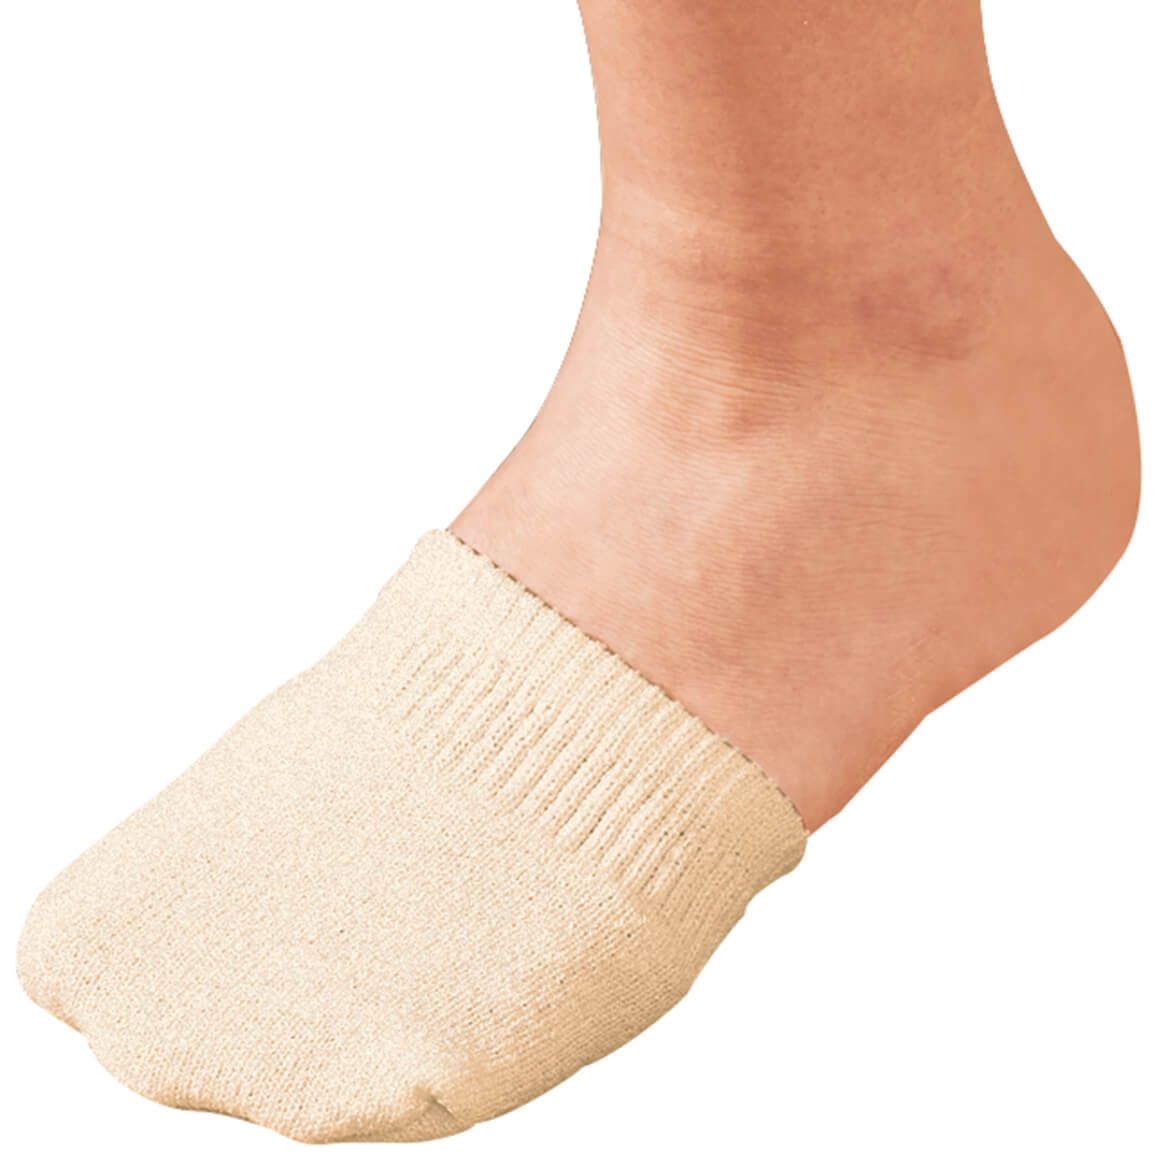 Toe Half Socks 2 Pair - Natural + '-' + 358149